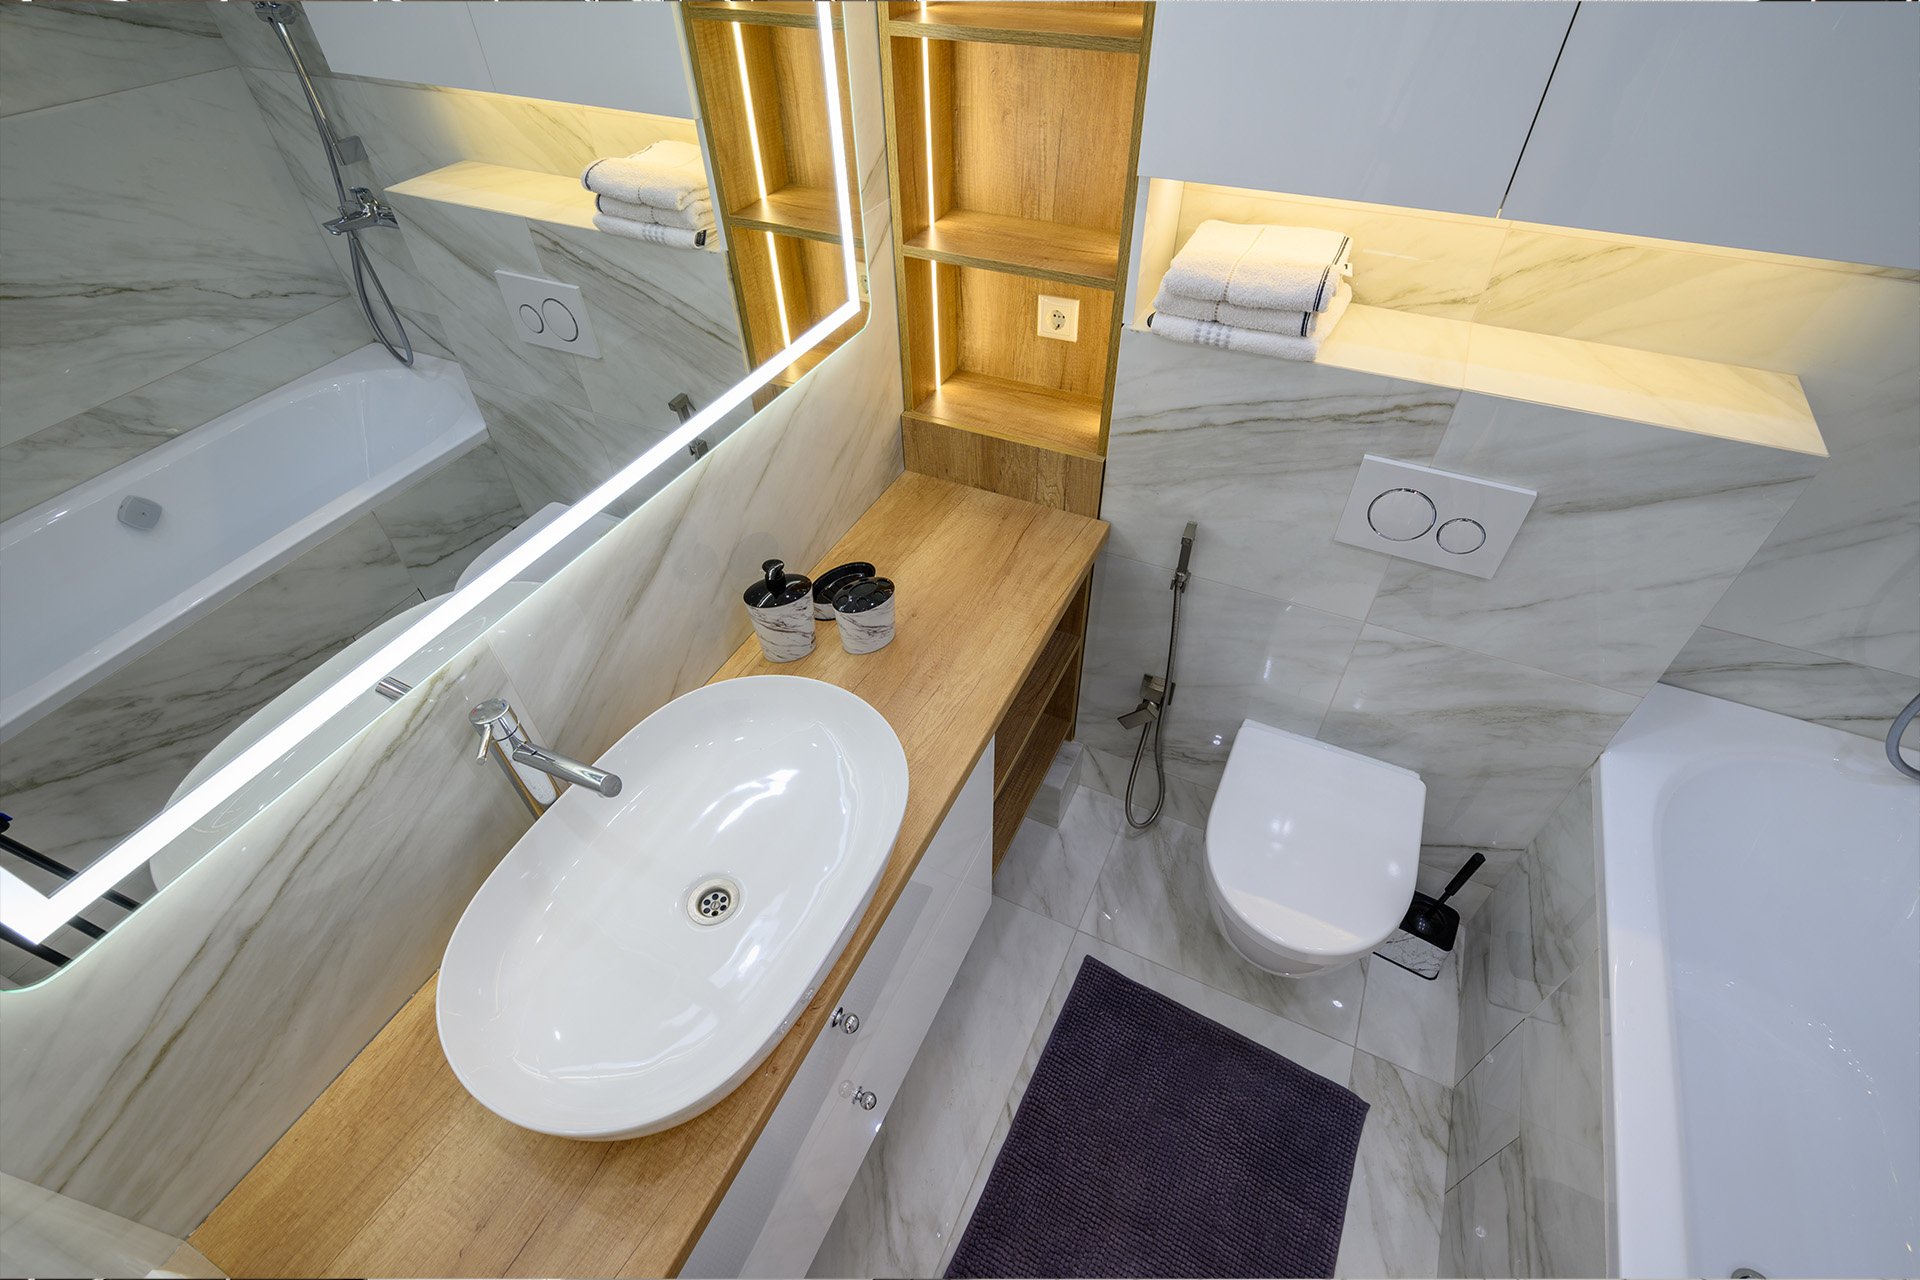 Интерьер ванной комнаты – фото и практические советы дизайнера